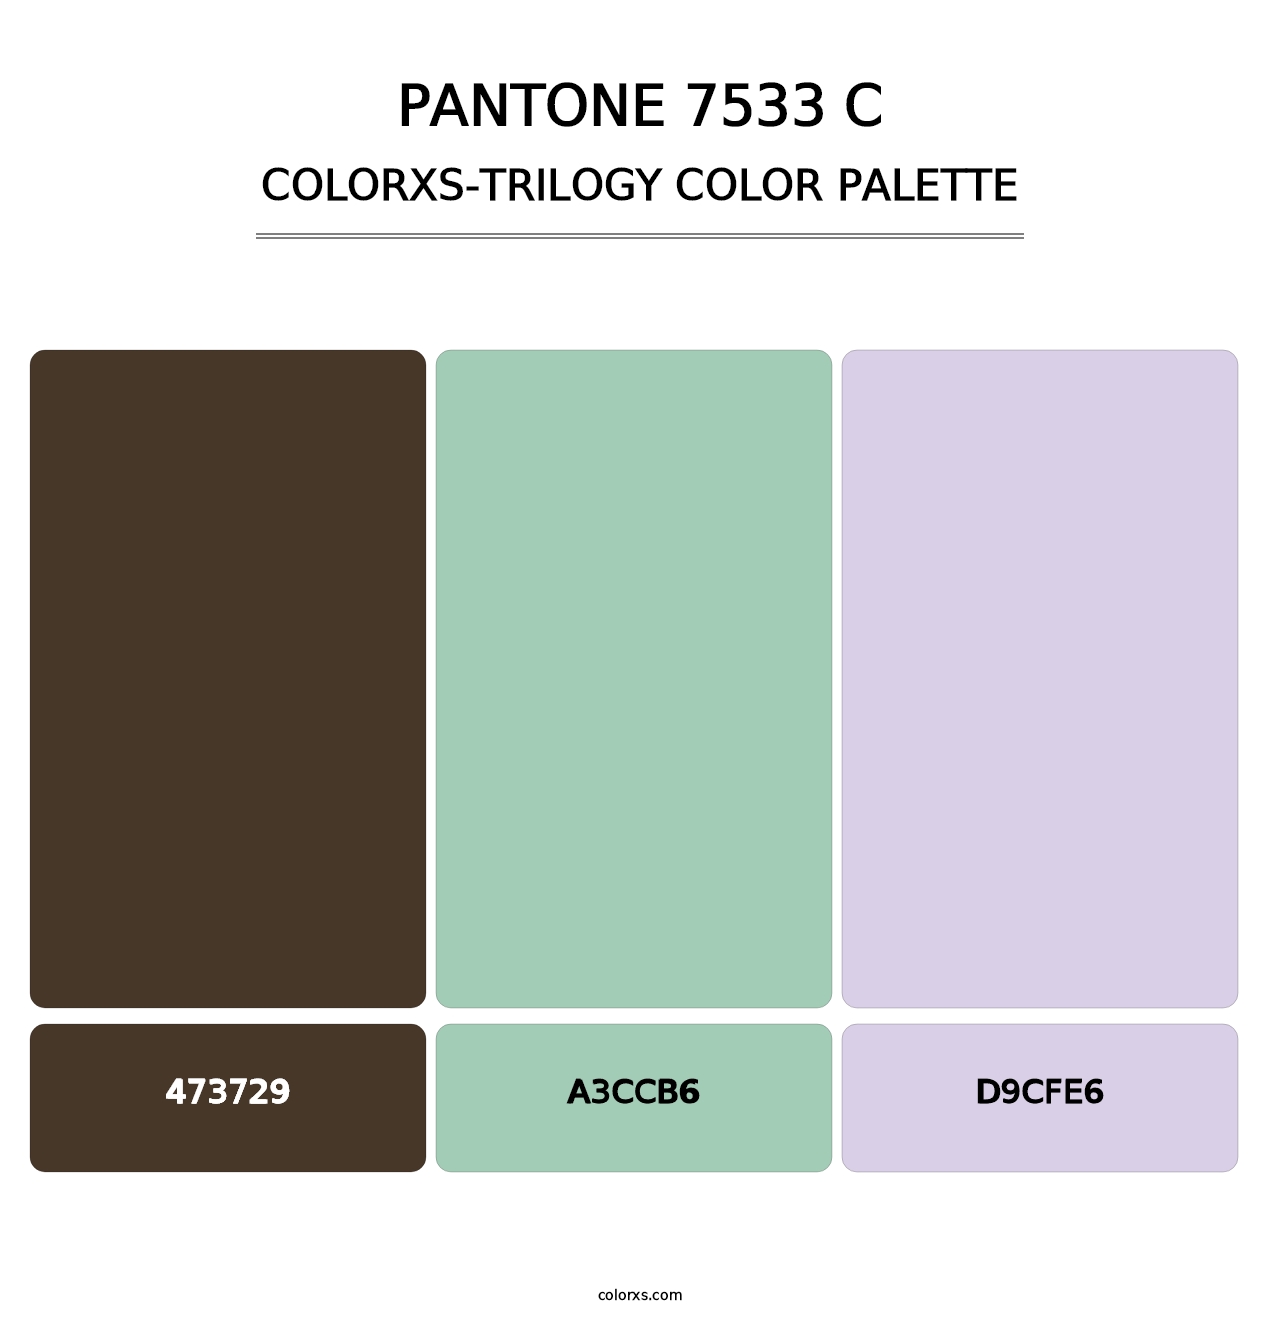 PANTONE 7533 C - Colorxs Trilogy Palette